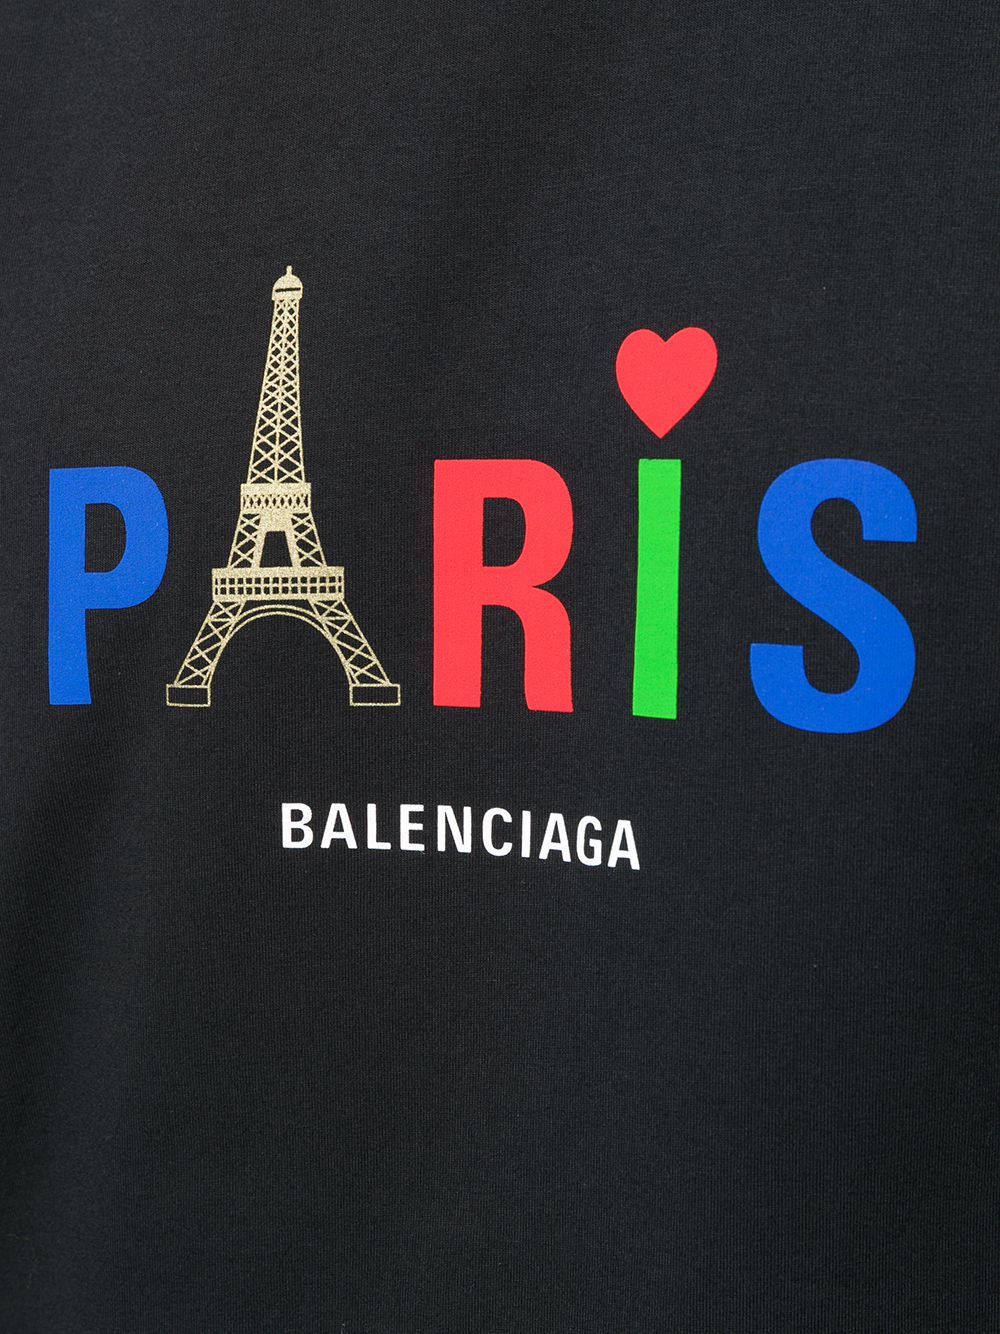 레드데이즈 - BALENCIAGA 파리 로고 티셔츠